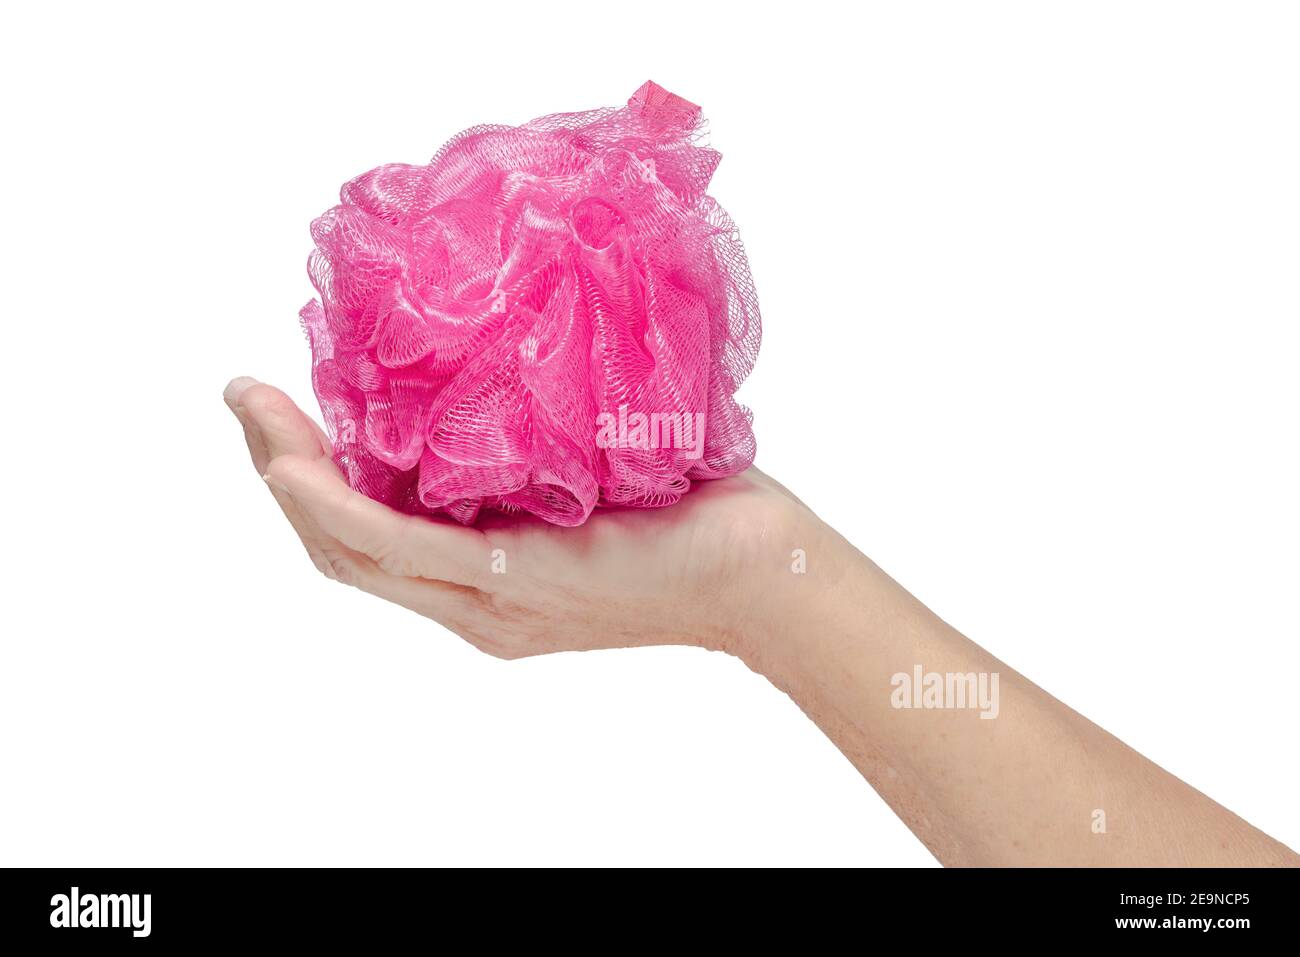 Immagine laterale orizzontale di una loofah da bagno rosa o di una scrunchie in una mano di donna su uno sfondo bianco. Foto Stock